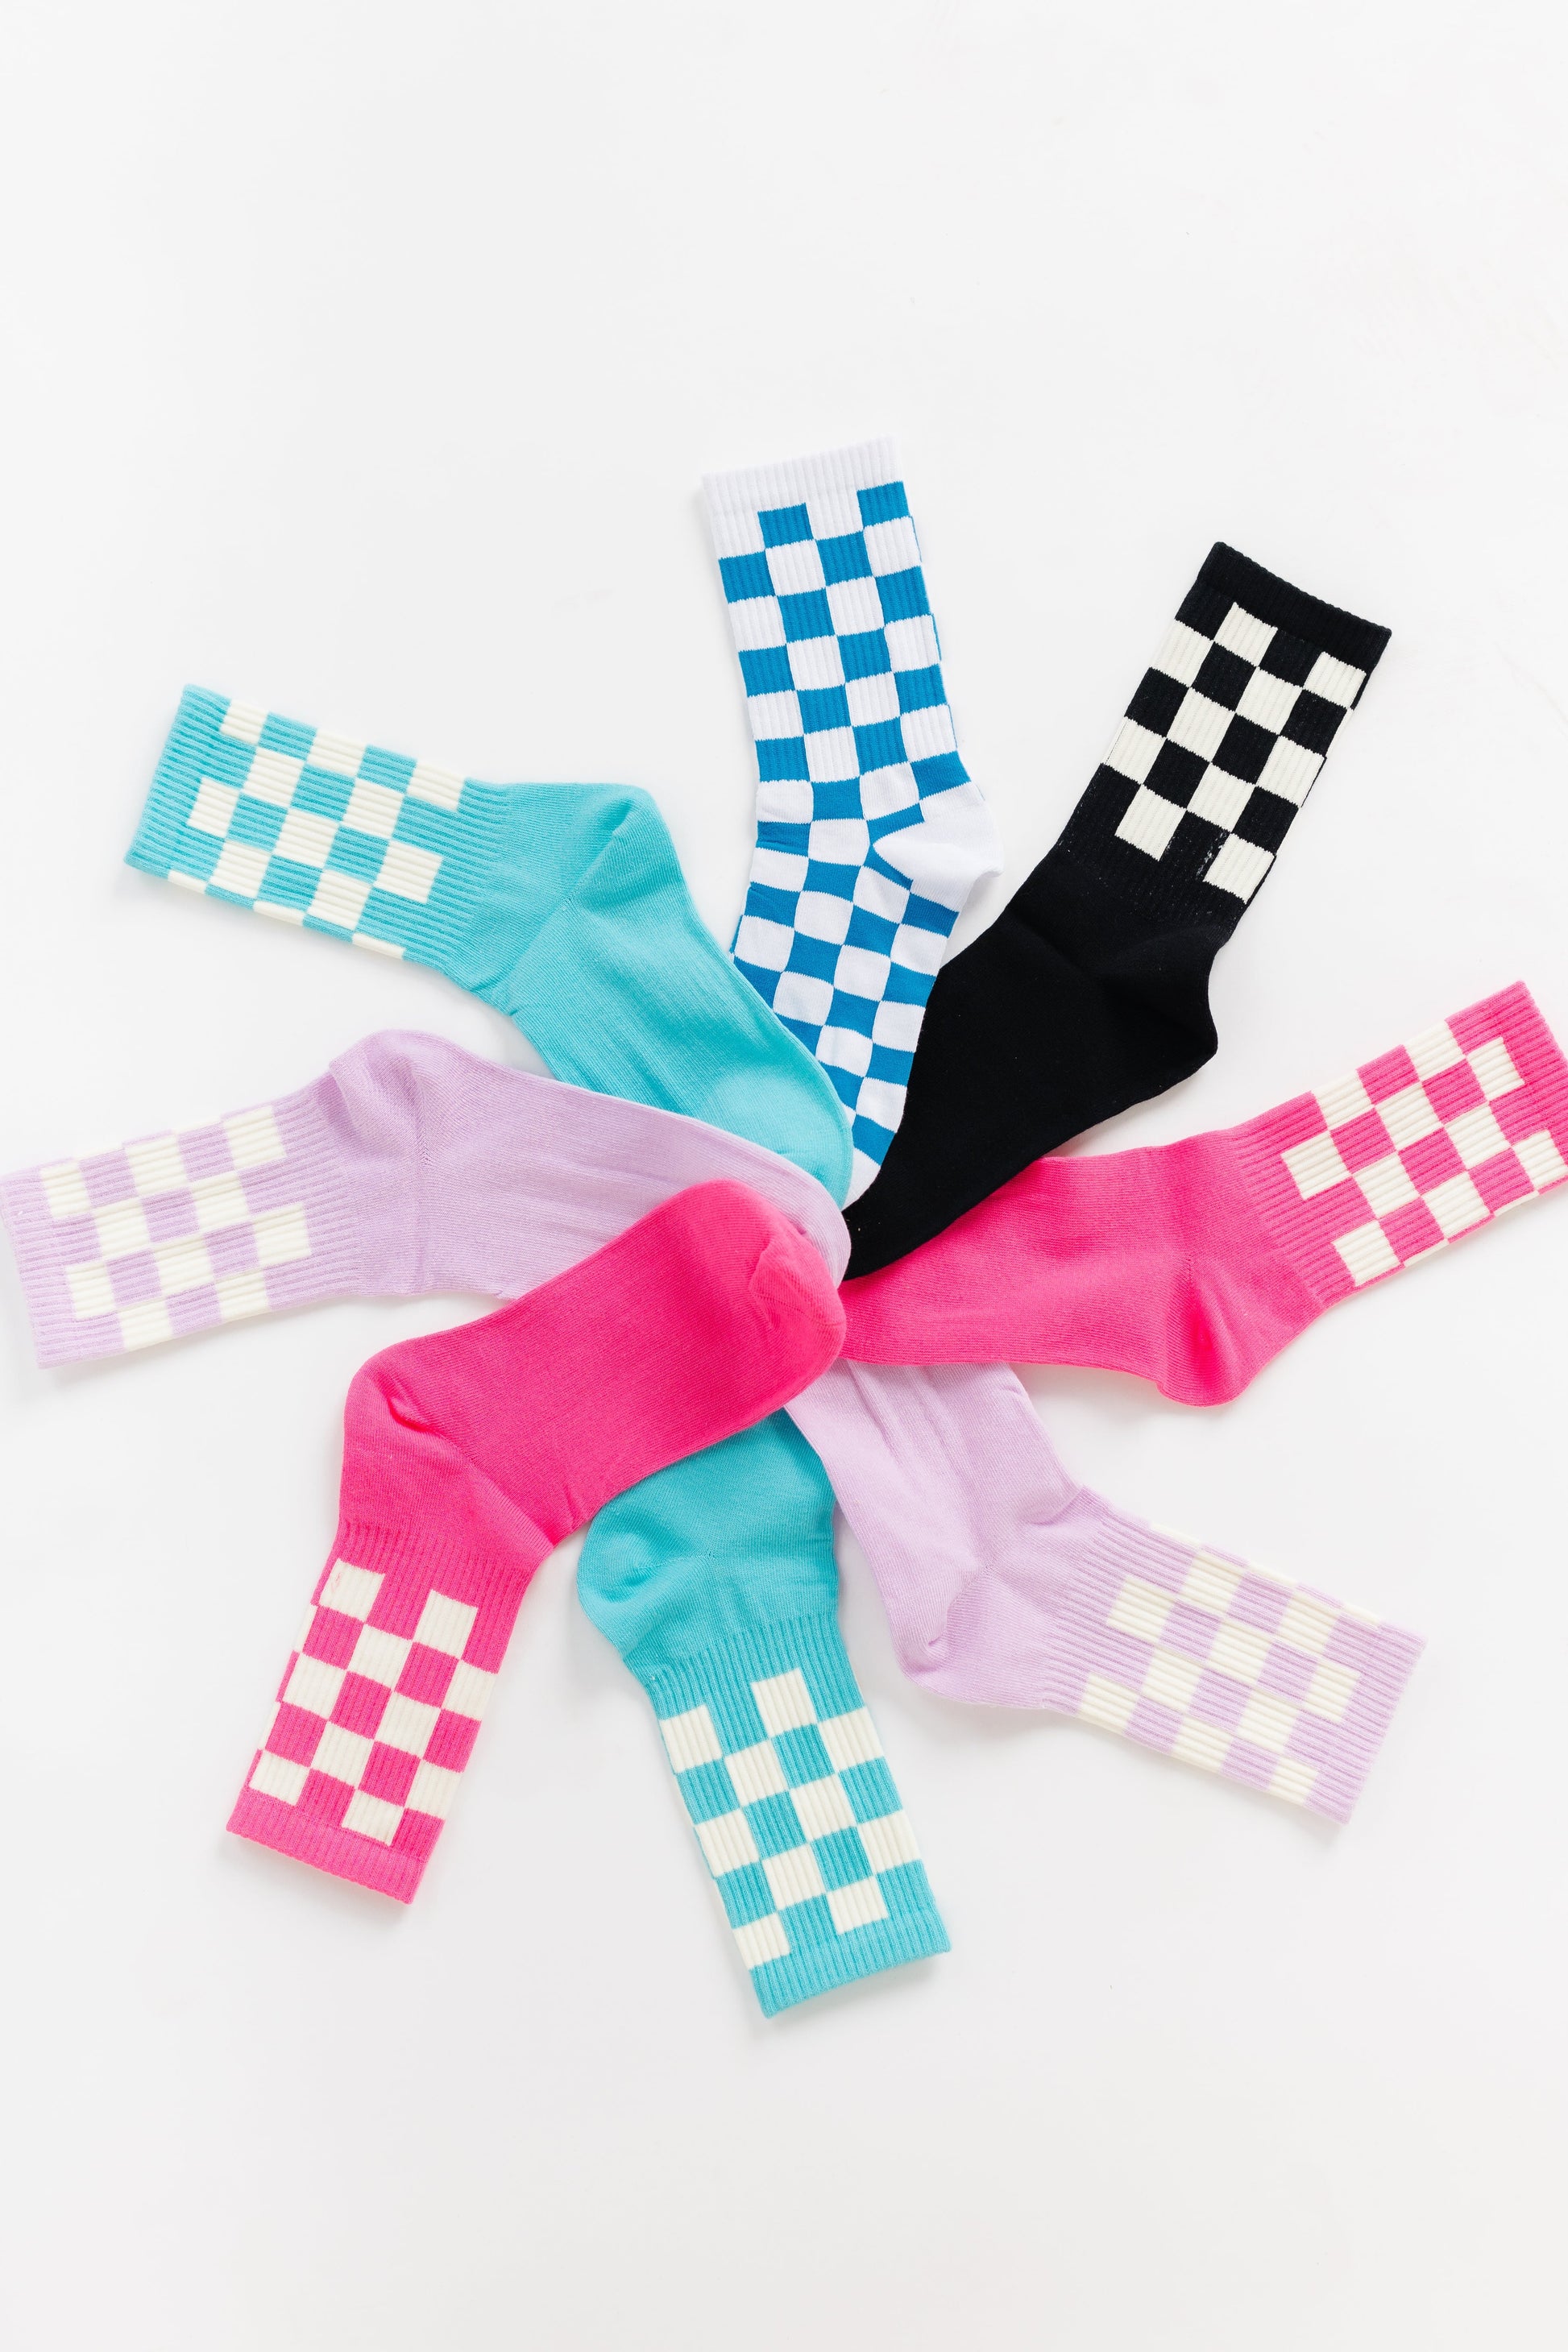 Checker Retro Socks WOMEN'S SOCKS Cove Accessories 